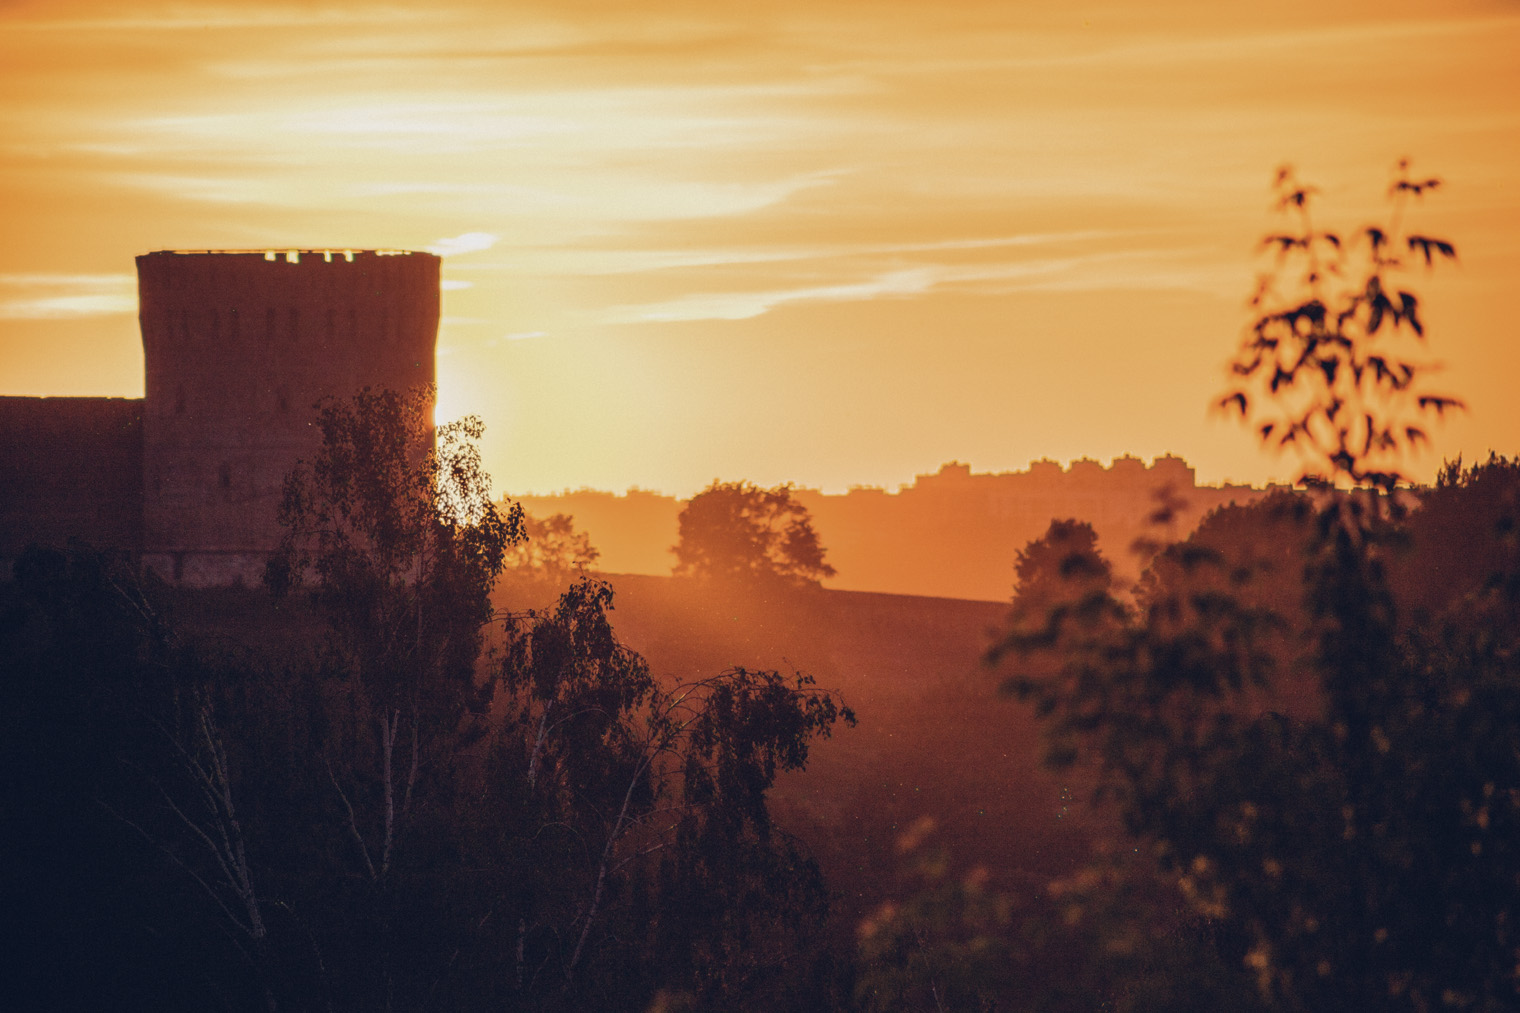 Увидеть башню Орел на закате так, чтобы солнце было позади нее, — тот еще квест. Такой пейзаж открывается из недр гаражных кооперативов в Промышленном районе